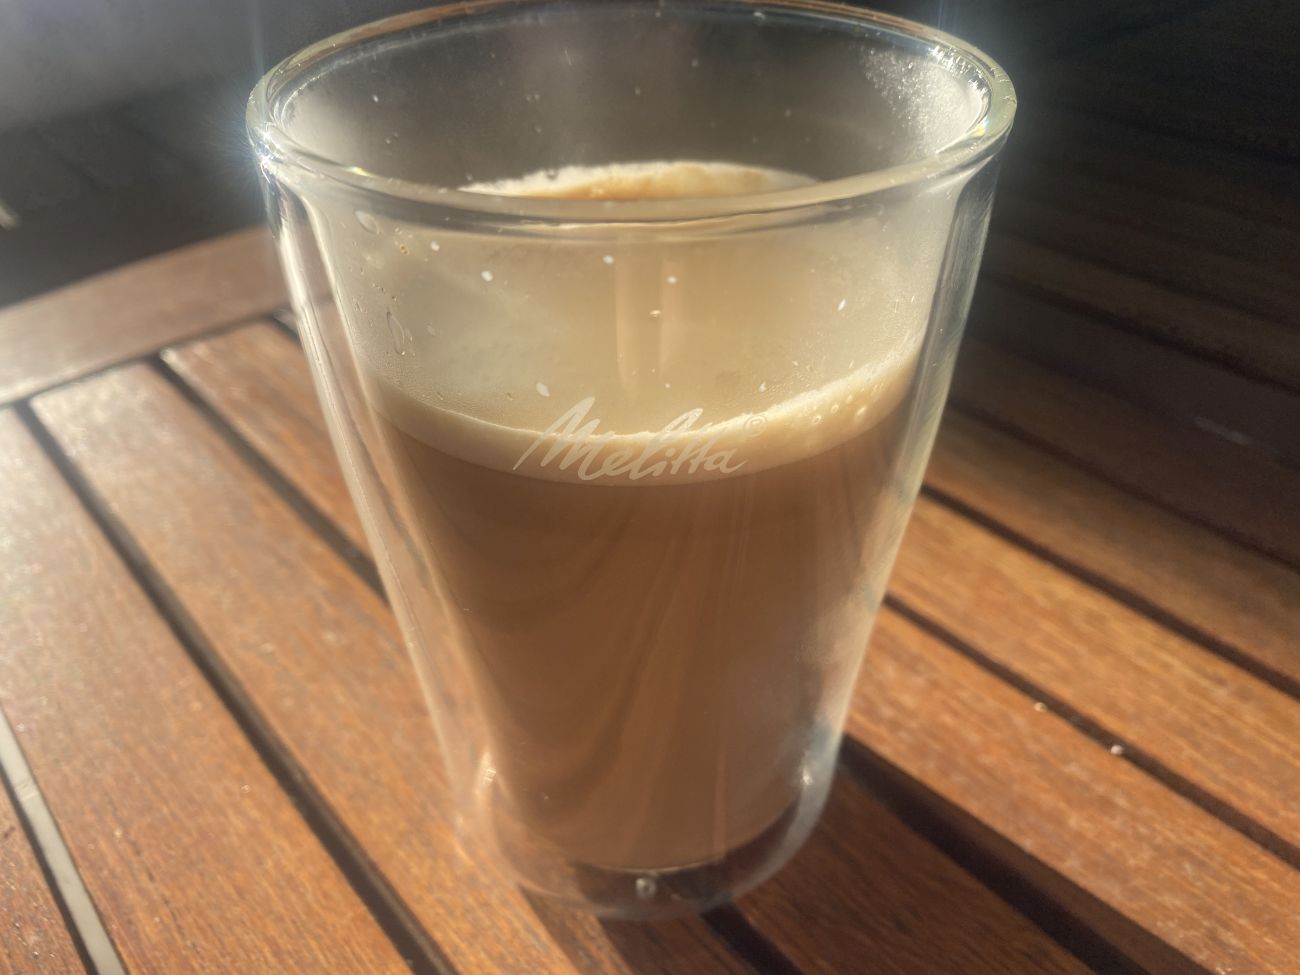 Melitta LatteSelect F63/0-201 zaparzone cafe au lait